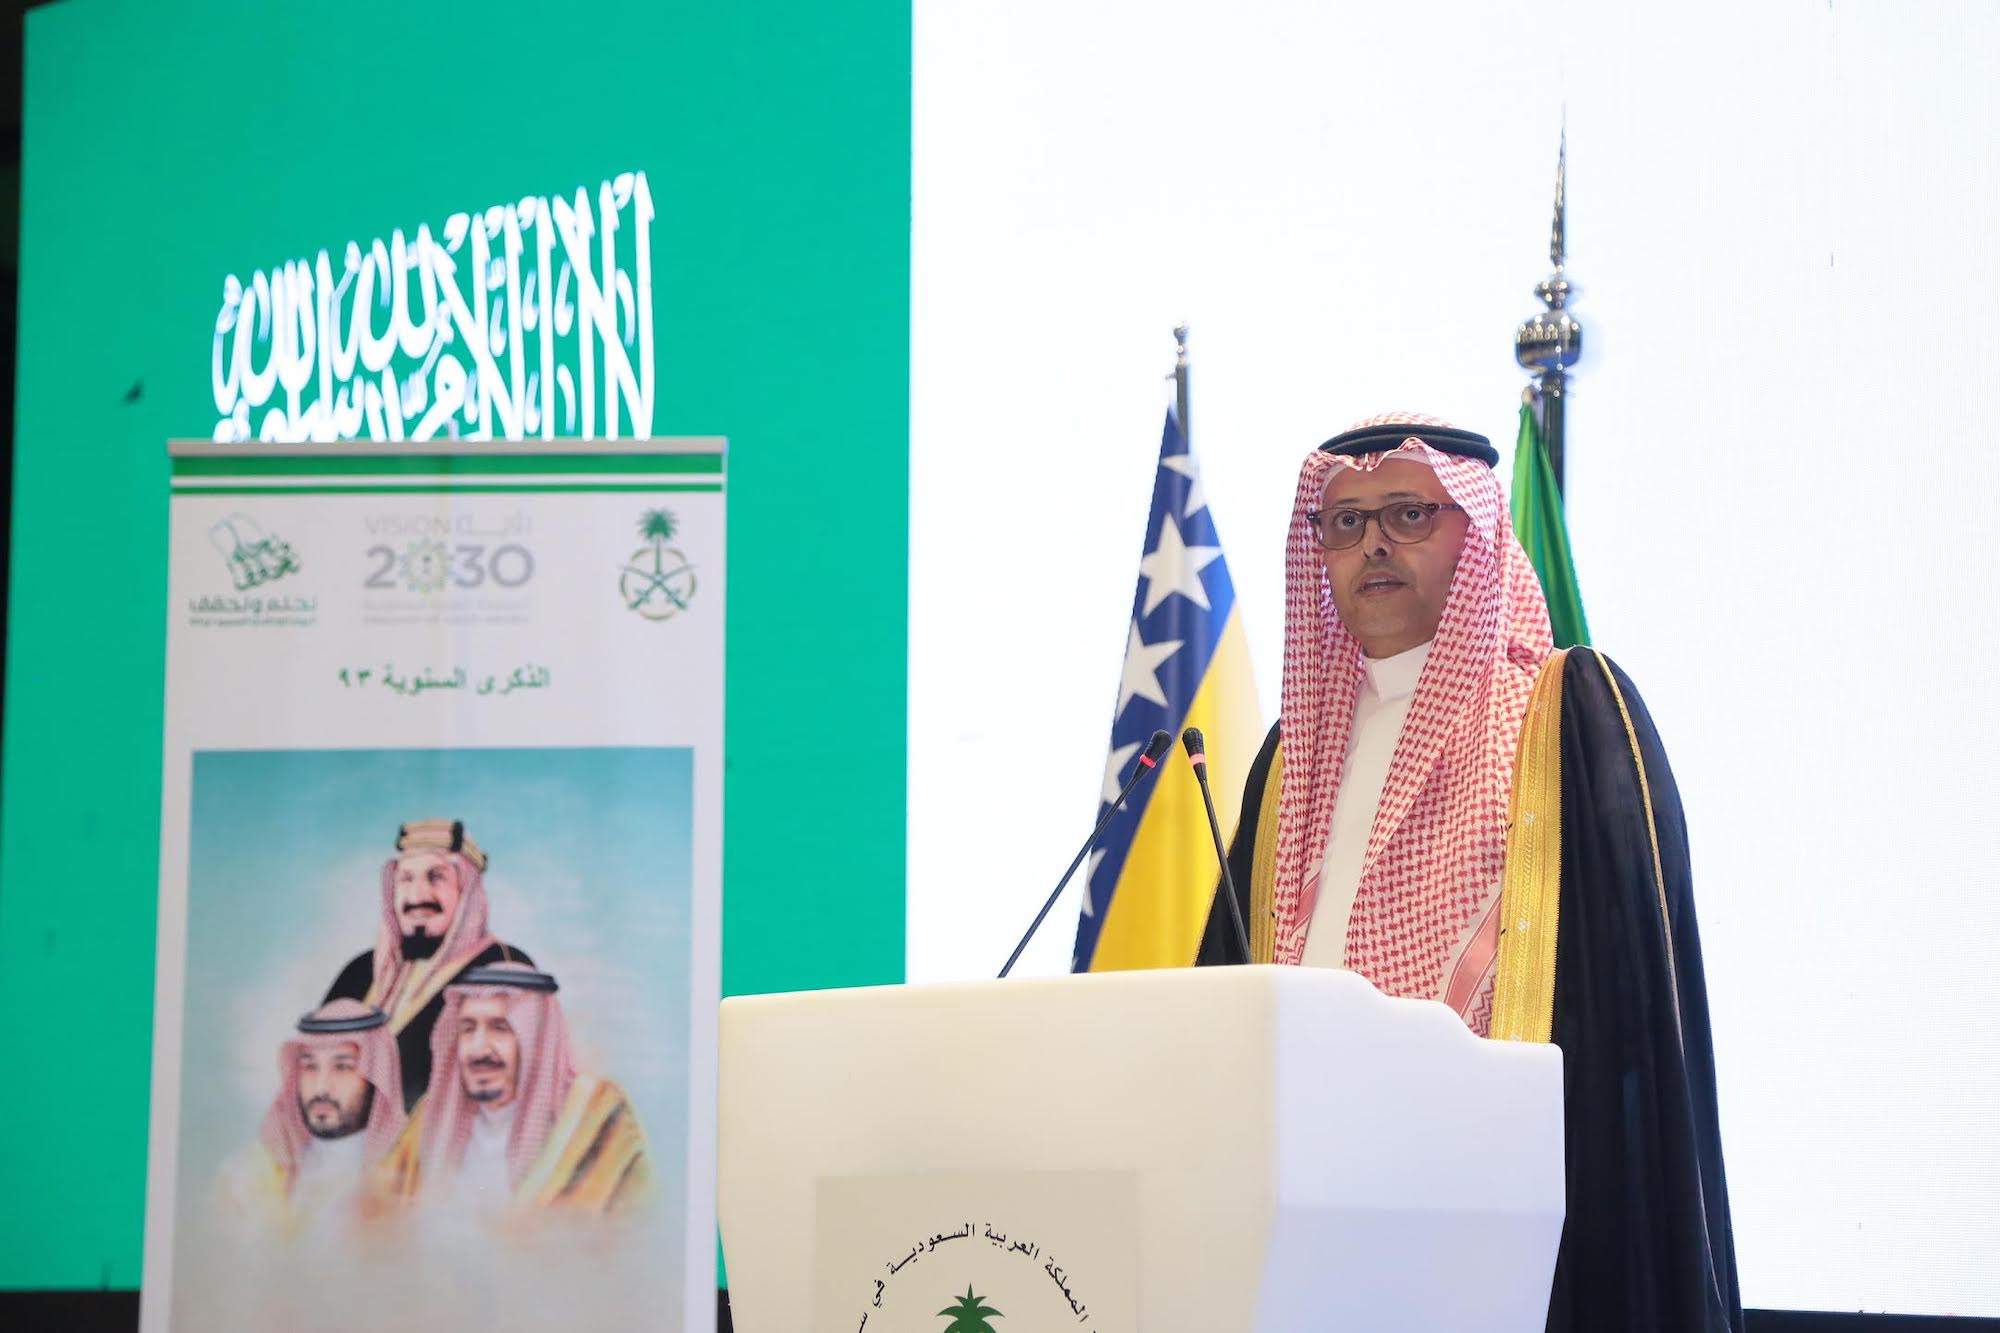 0-10.jpeg - Zamjenik reisul-uleme pristustvovao svečanosti povodom obilježavanja Nacionalnog dana Kraljevine Saudijske Arabije